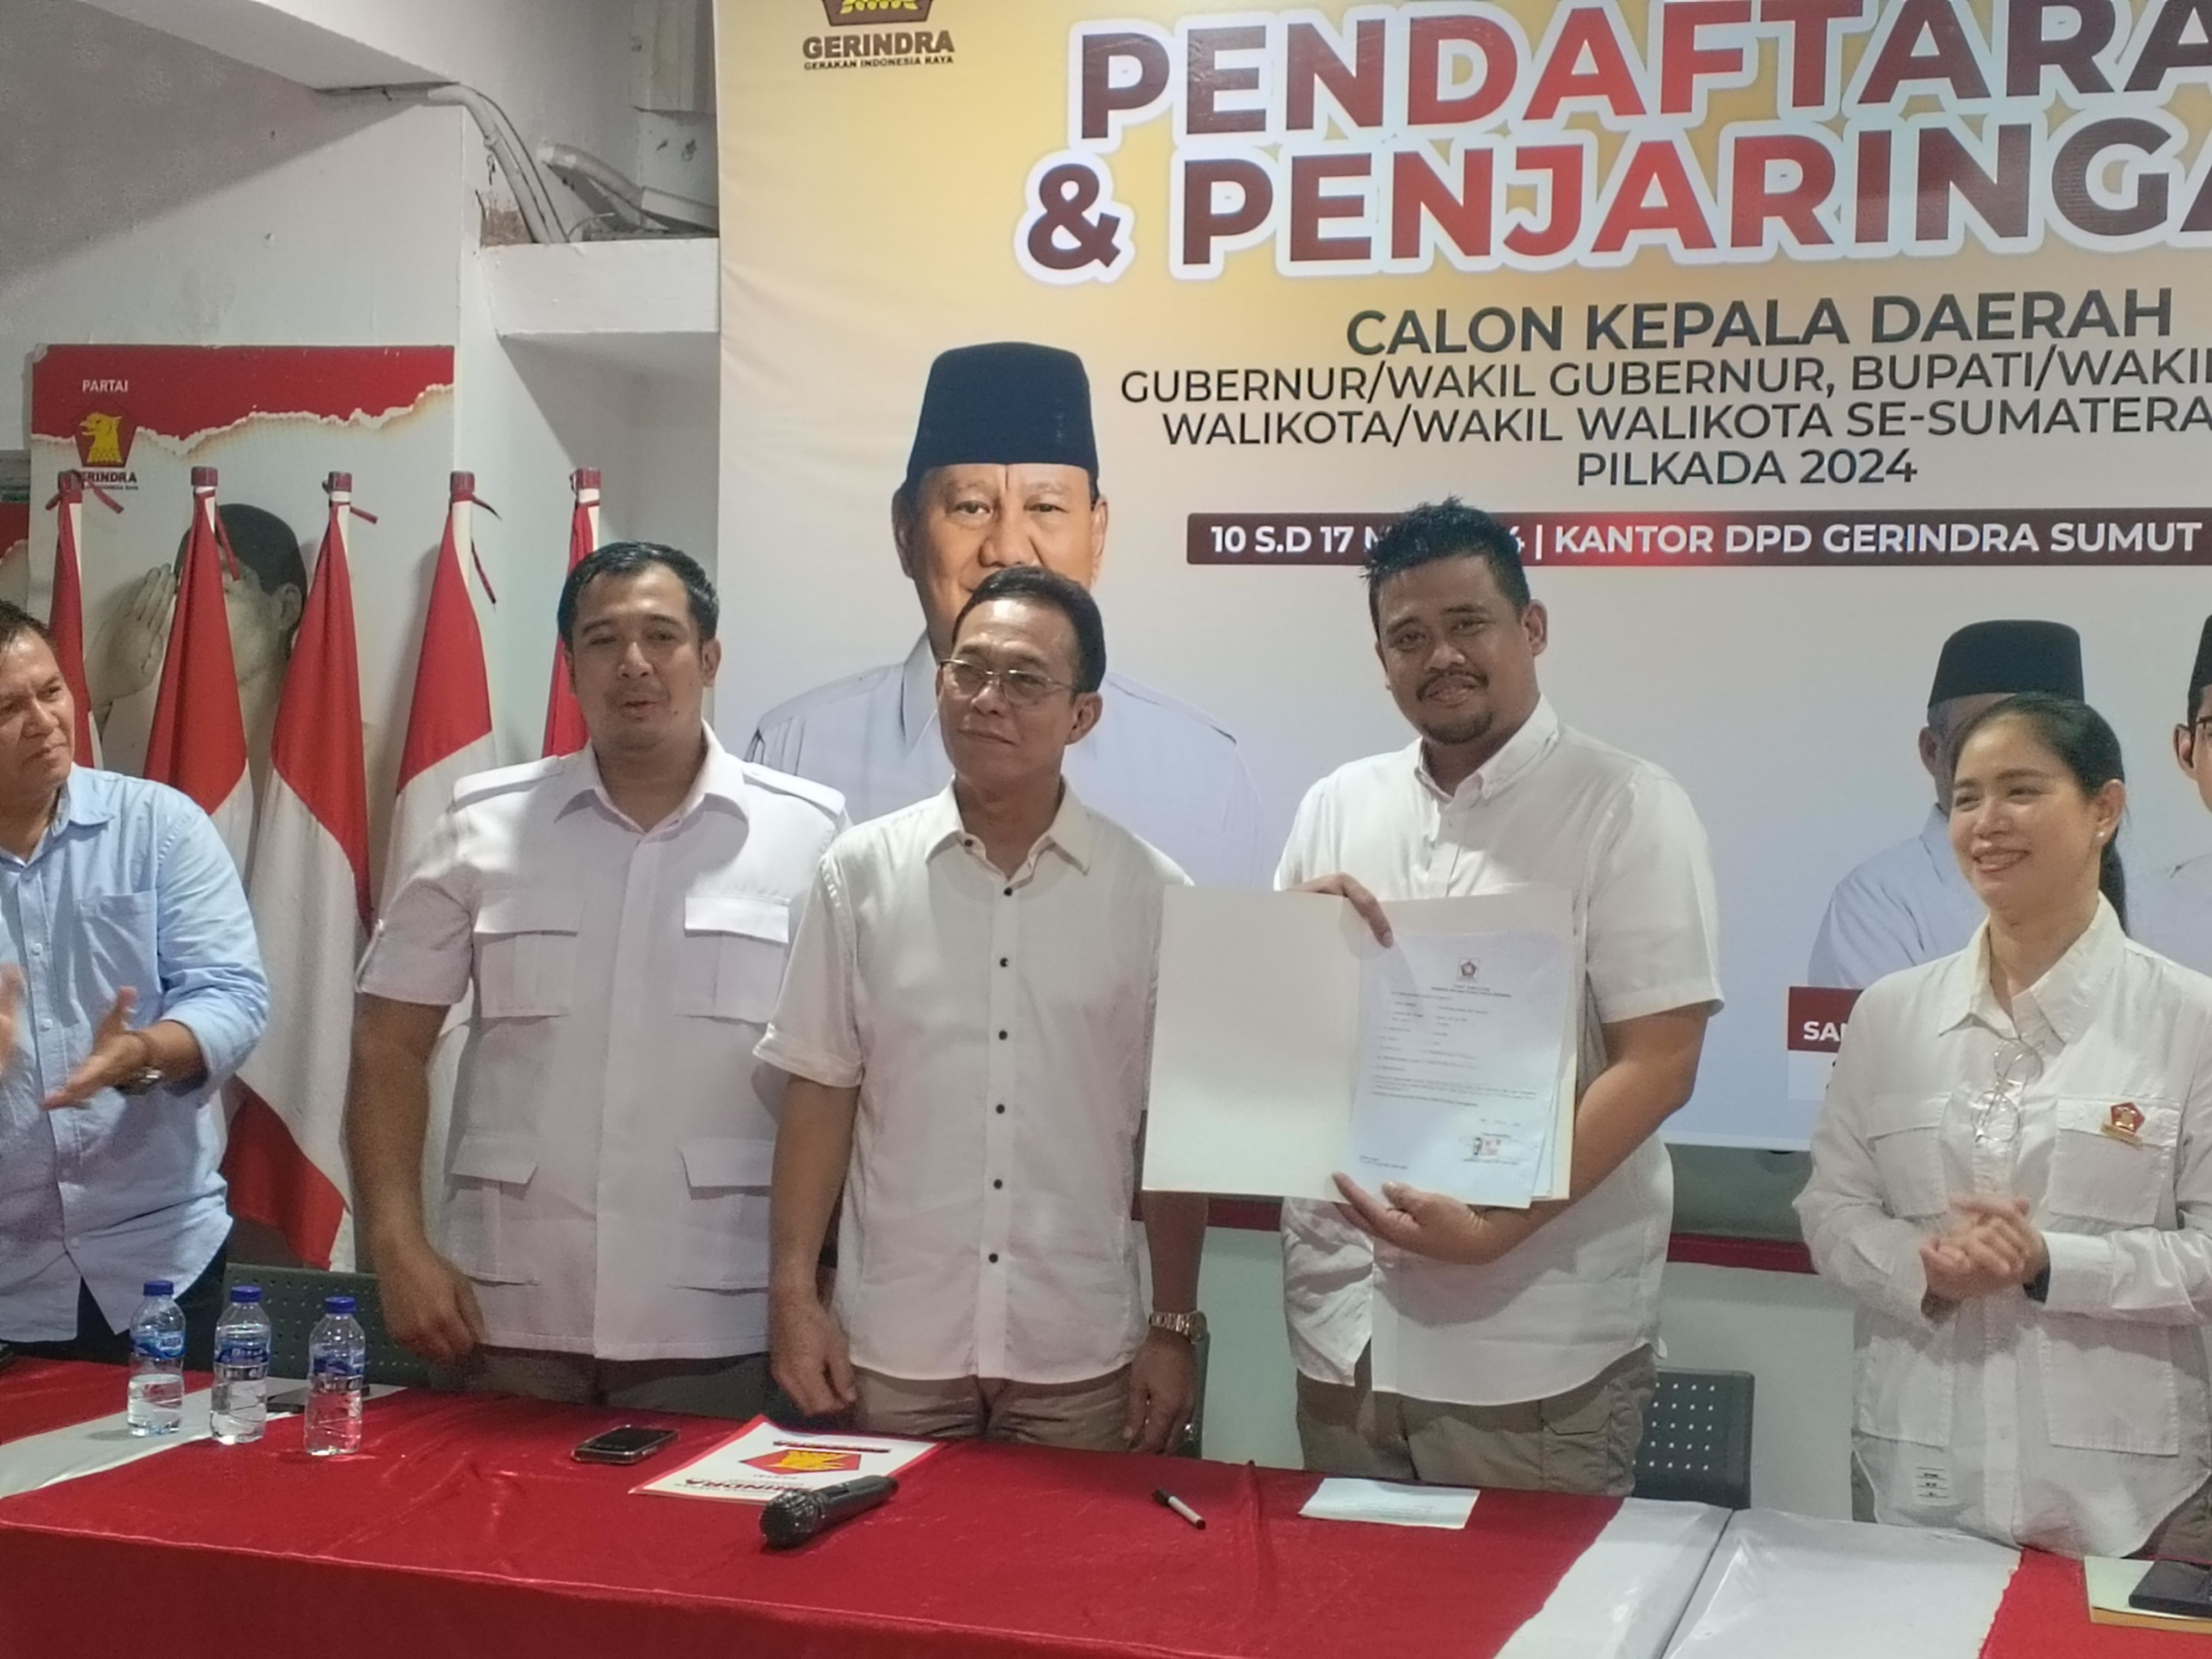 Bobby Resmi Masuk Gerindra, Jokowi Segera Merapat ke Golkar?